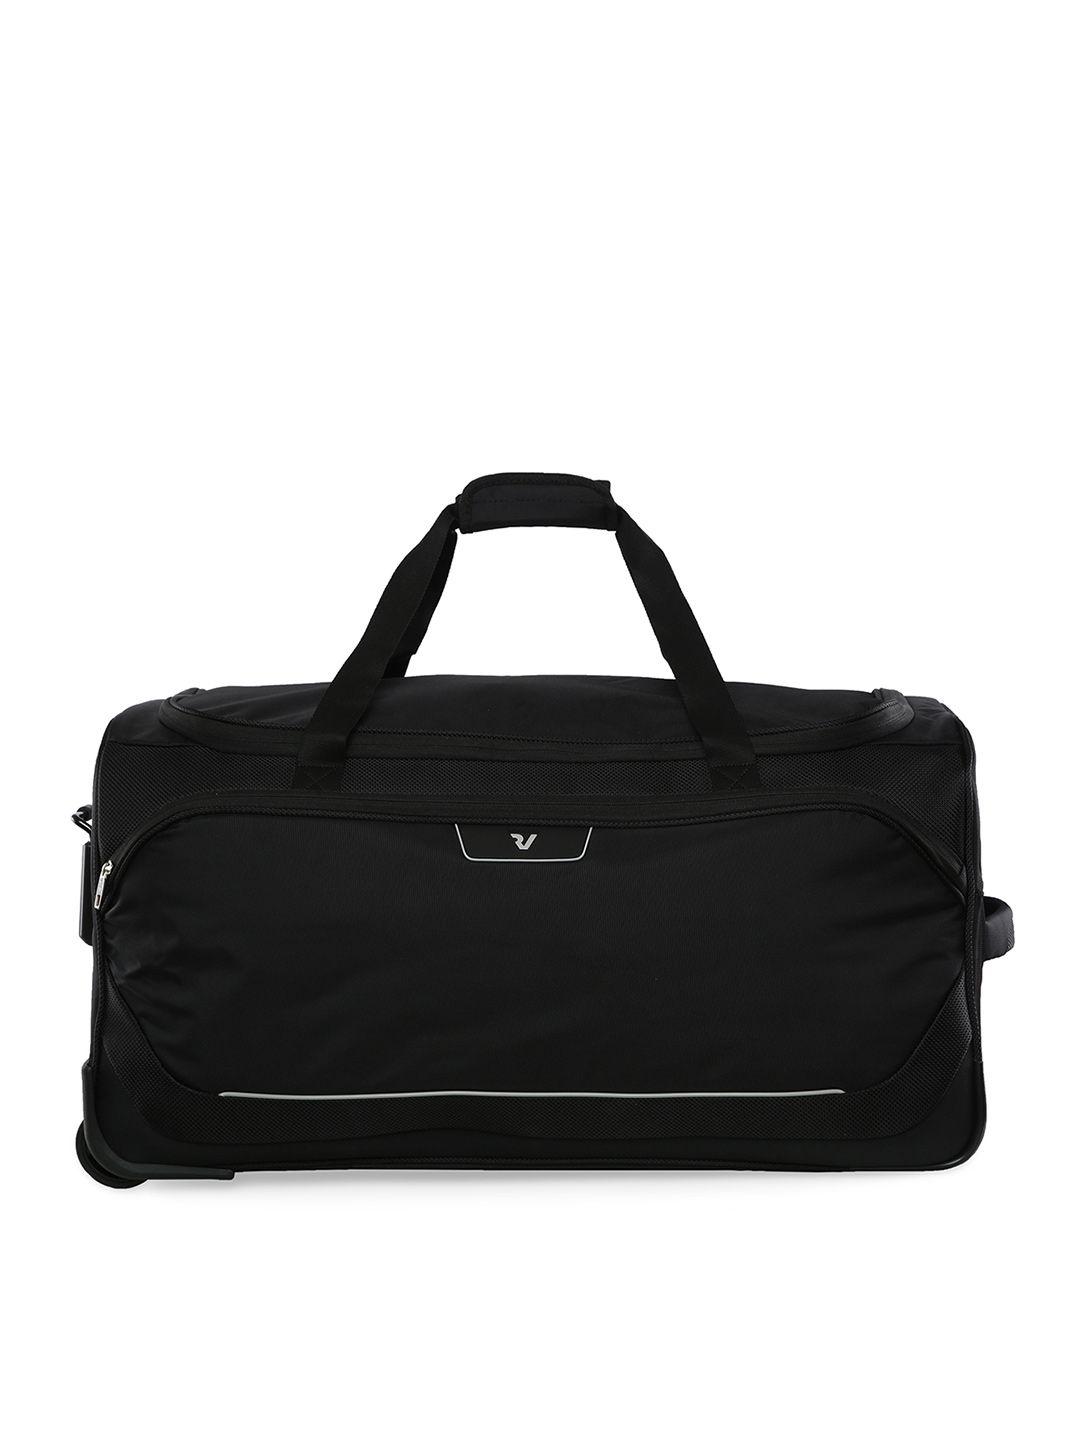 roncato joy range black color poliestere material soft medium size duffel bag